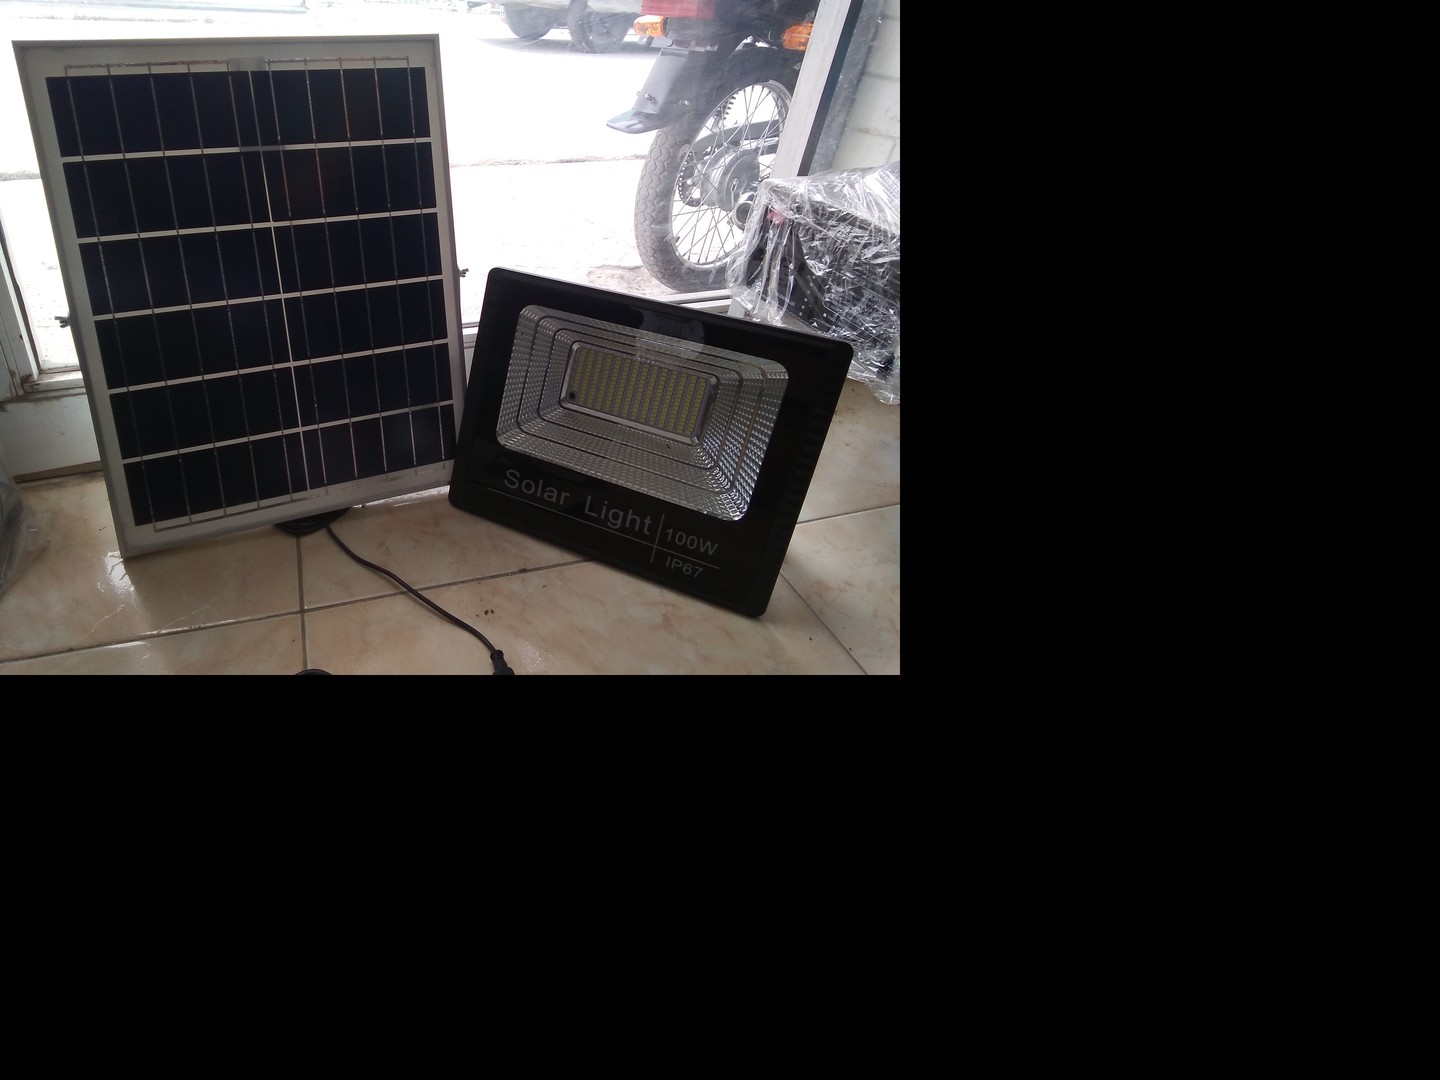 herramientas, jardines y exterior - Paneles solar con su lámpara regulado solar